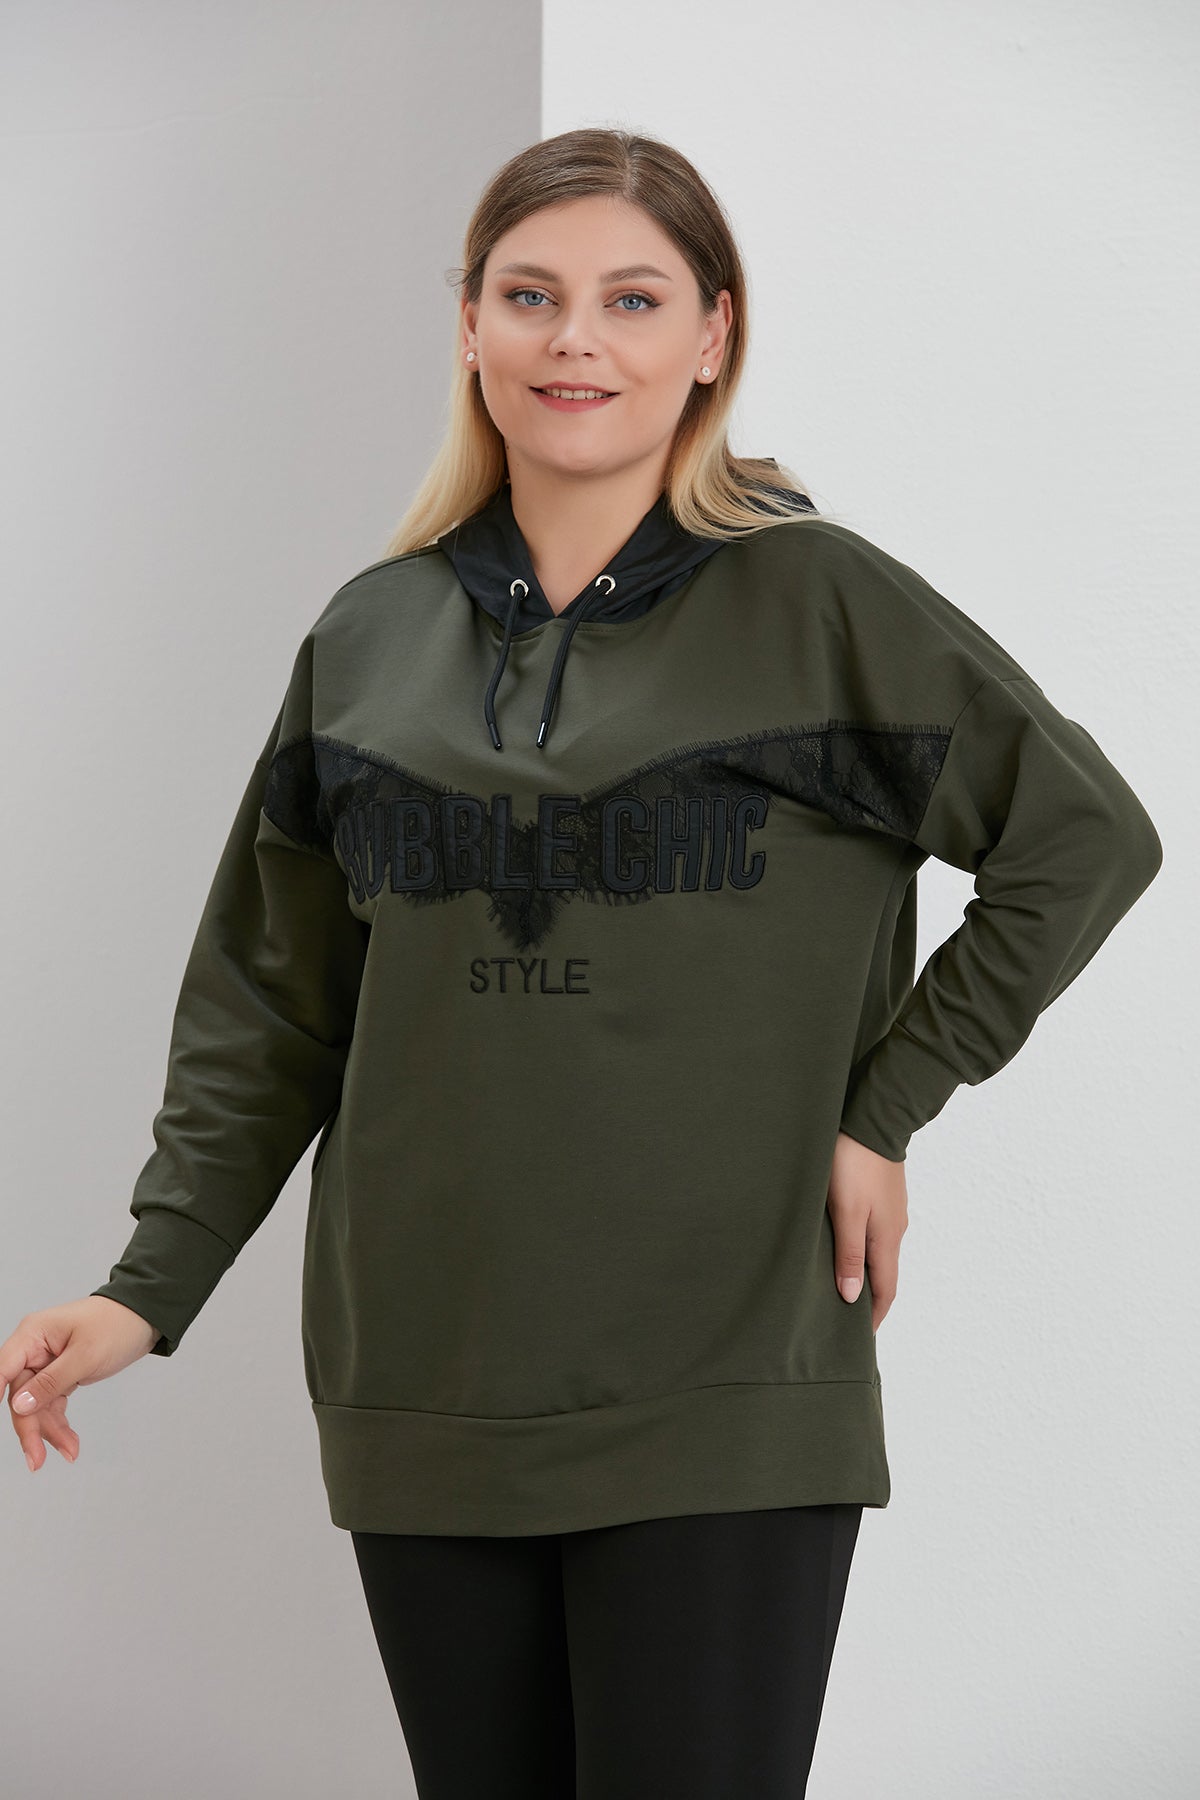 Μπλούζα με δαντέλα Bubble Chic σε μεγάλα μεγέθη  - Πράσινο